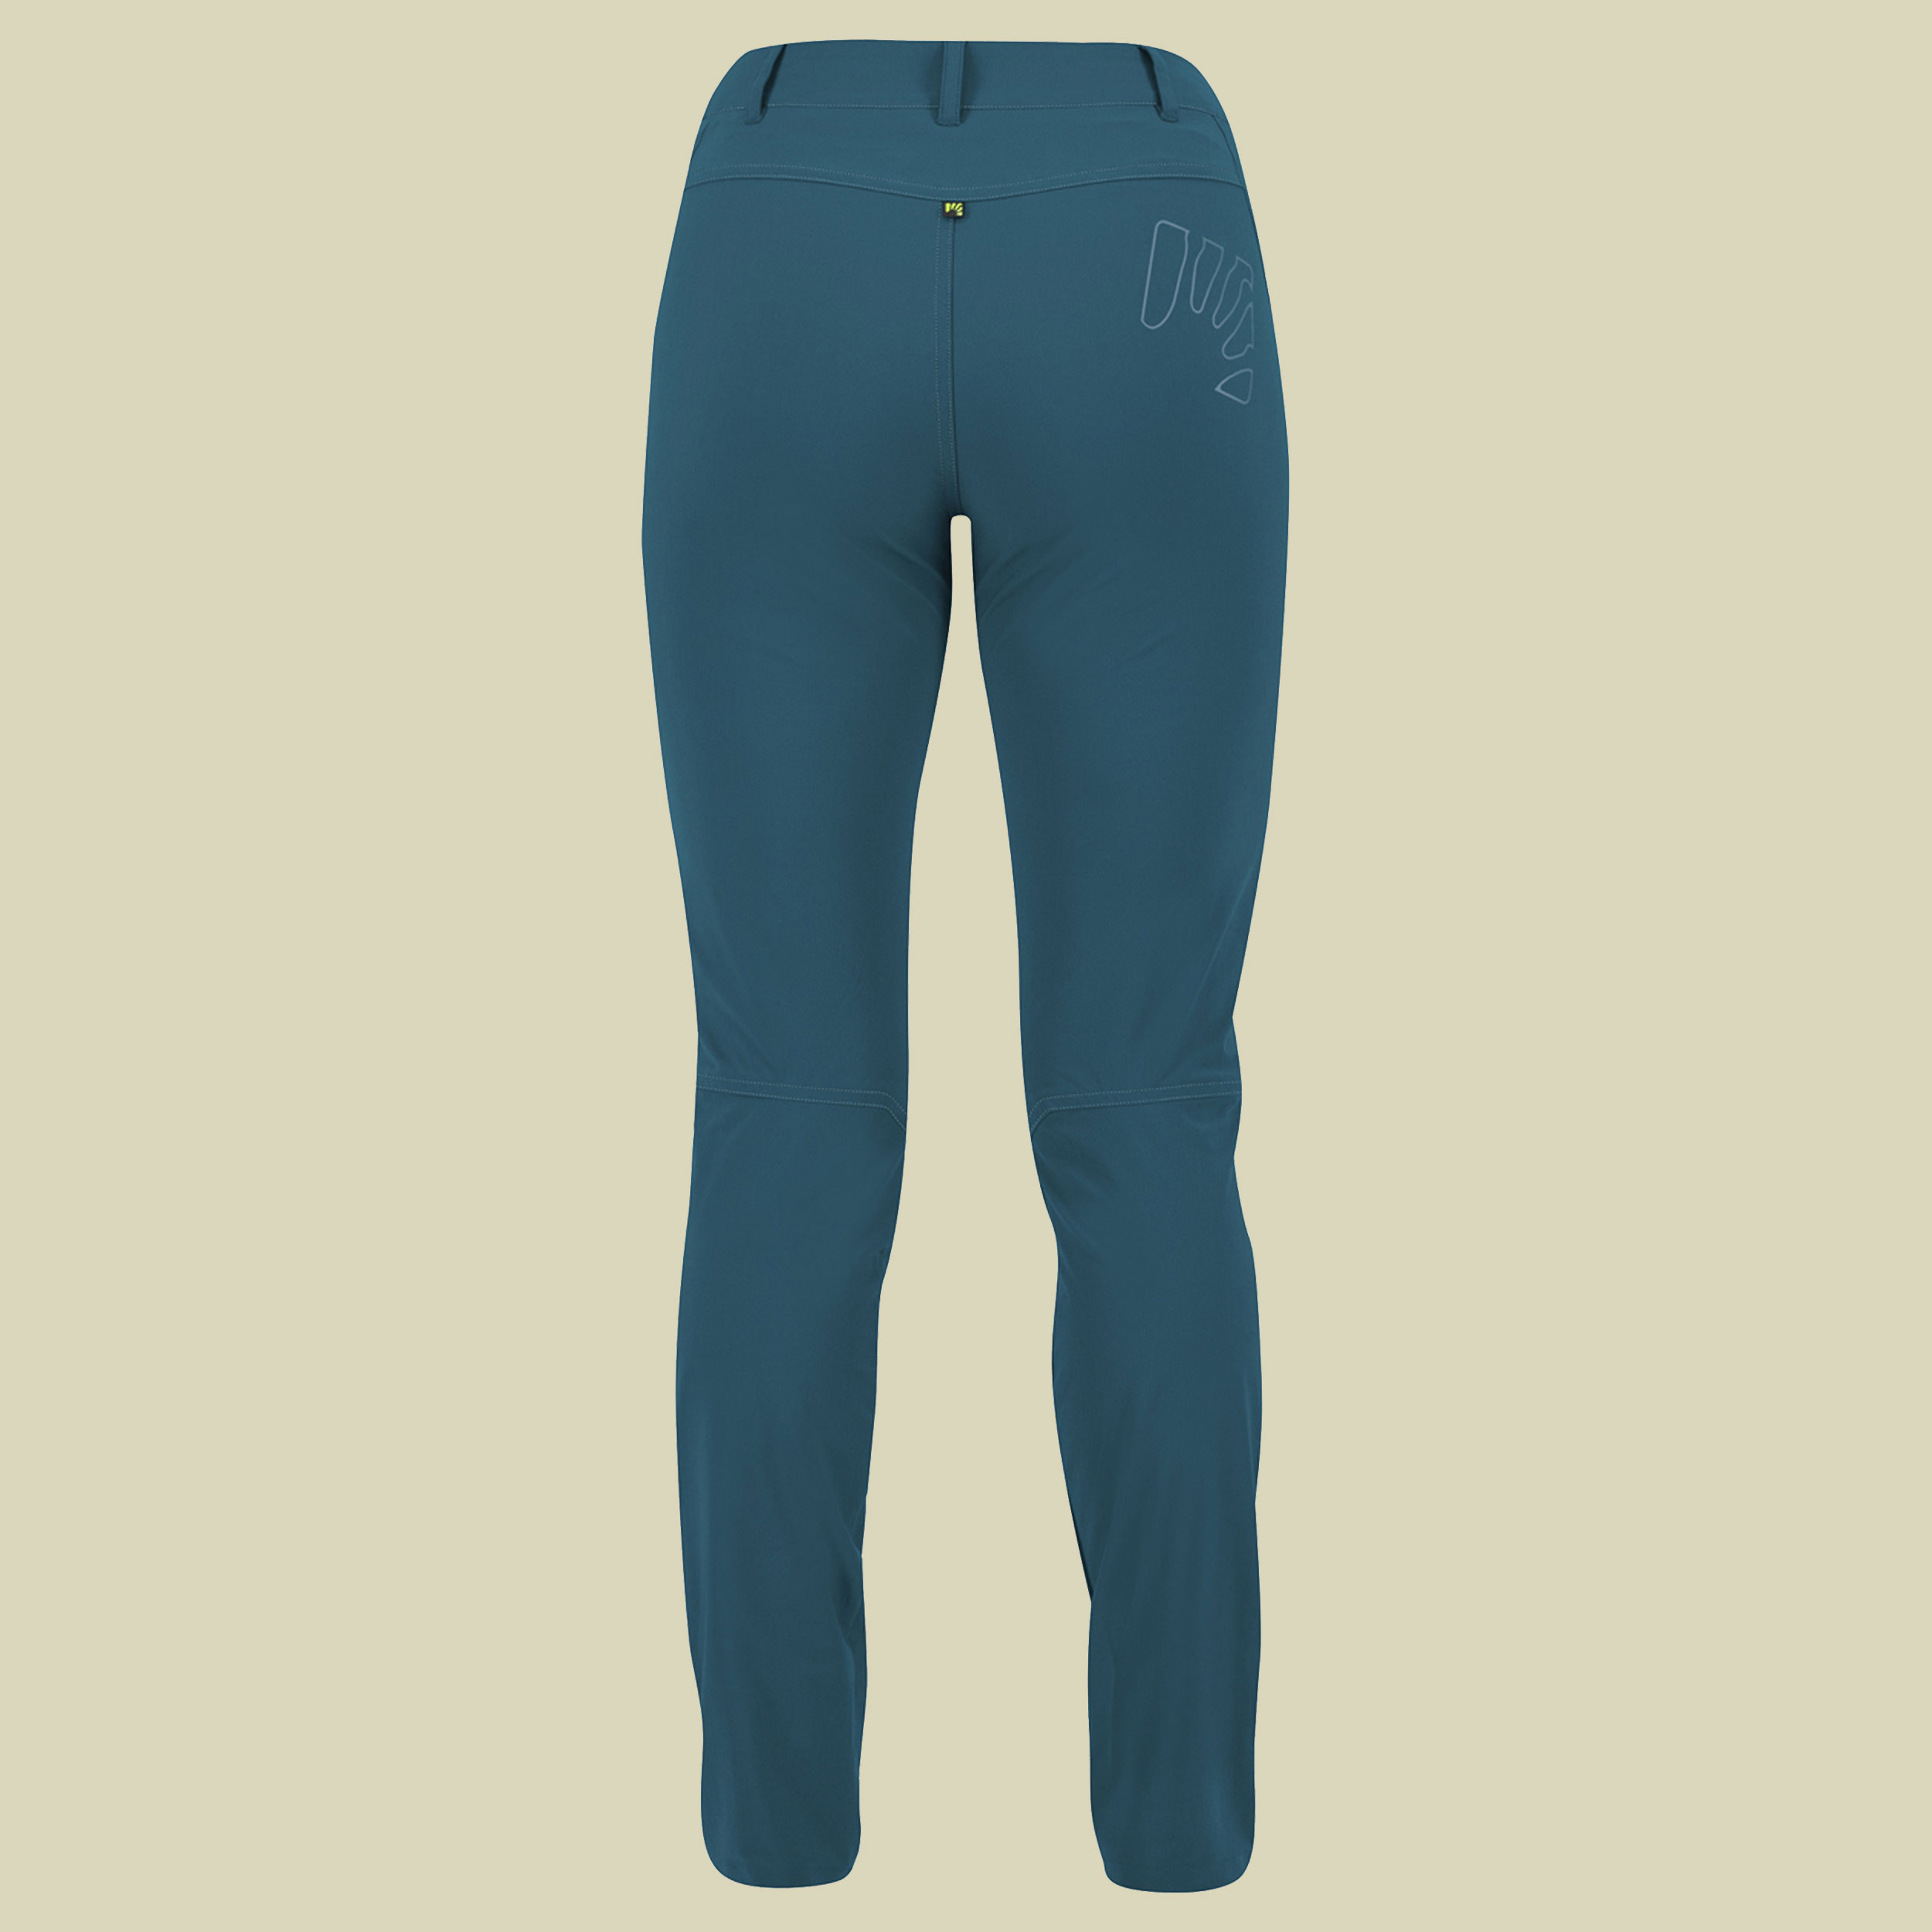 Fantasia Evo Pant Women Größe 36 (42 Herstellergr.) Farbe corsair/adriatic blue